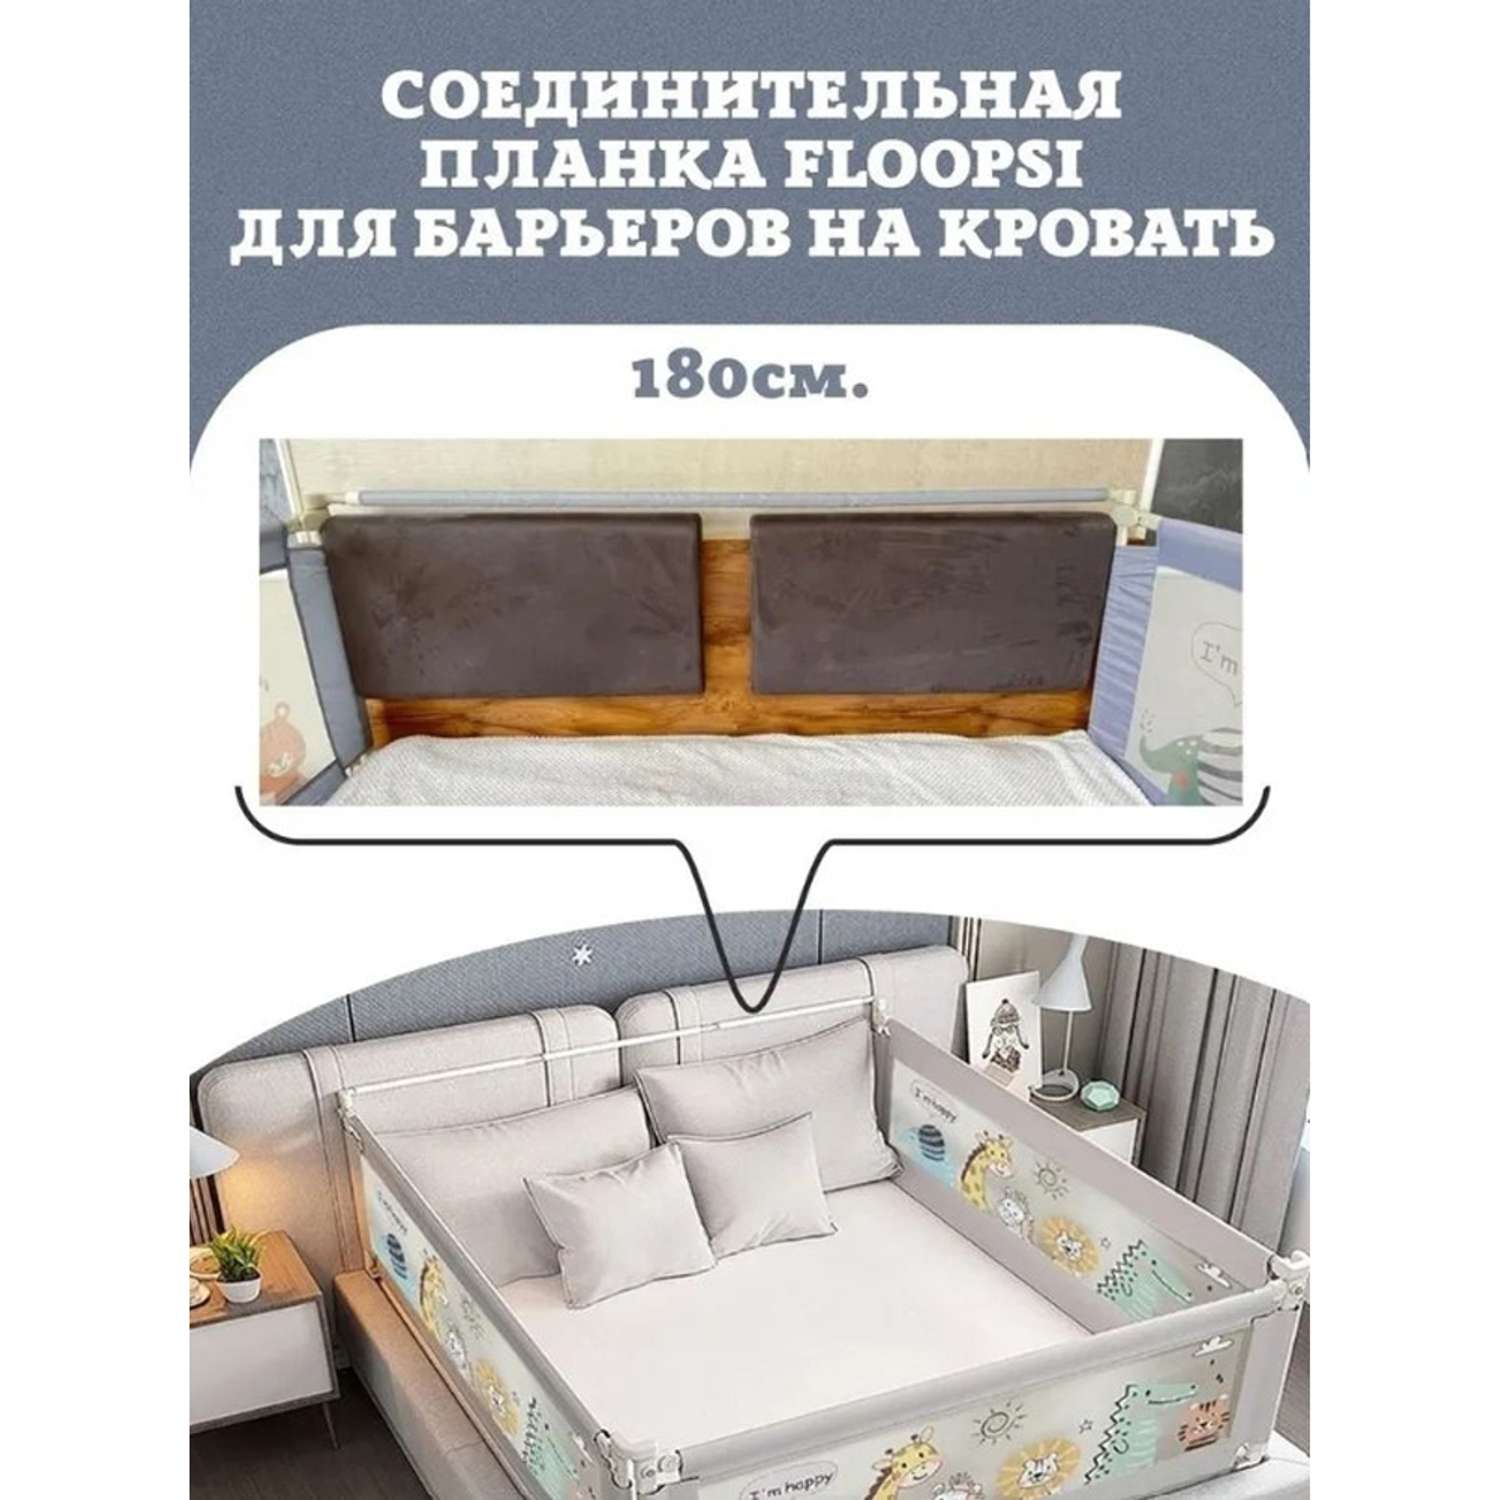 Комплект из 3-х барьеров Floopsi на кровать 2.0х1.8х2.0 м для детей от падений + соединительная планка - фото 4